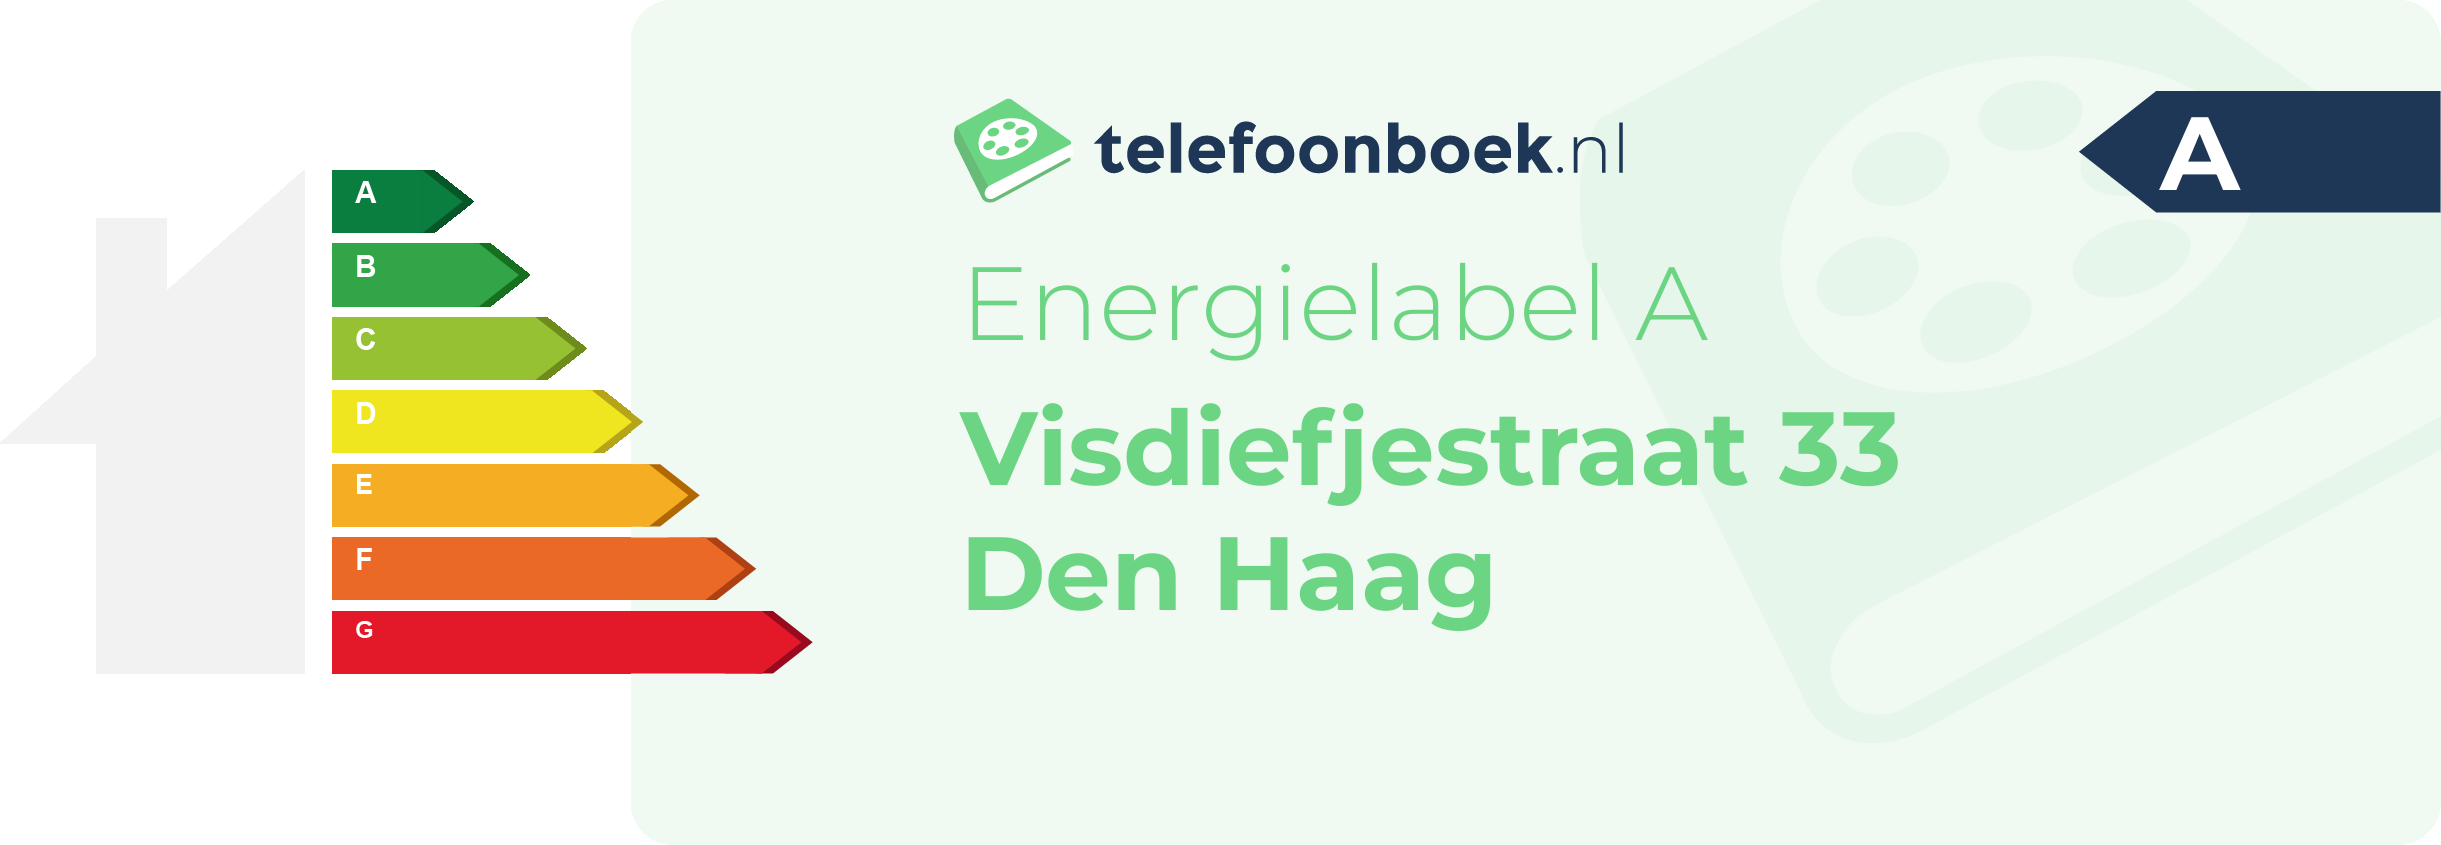 Energielabel Visdiefjestraat 33 Den Haag